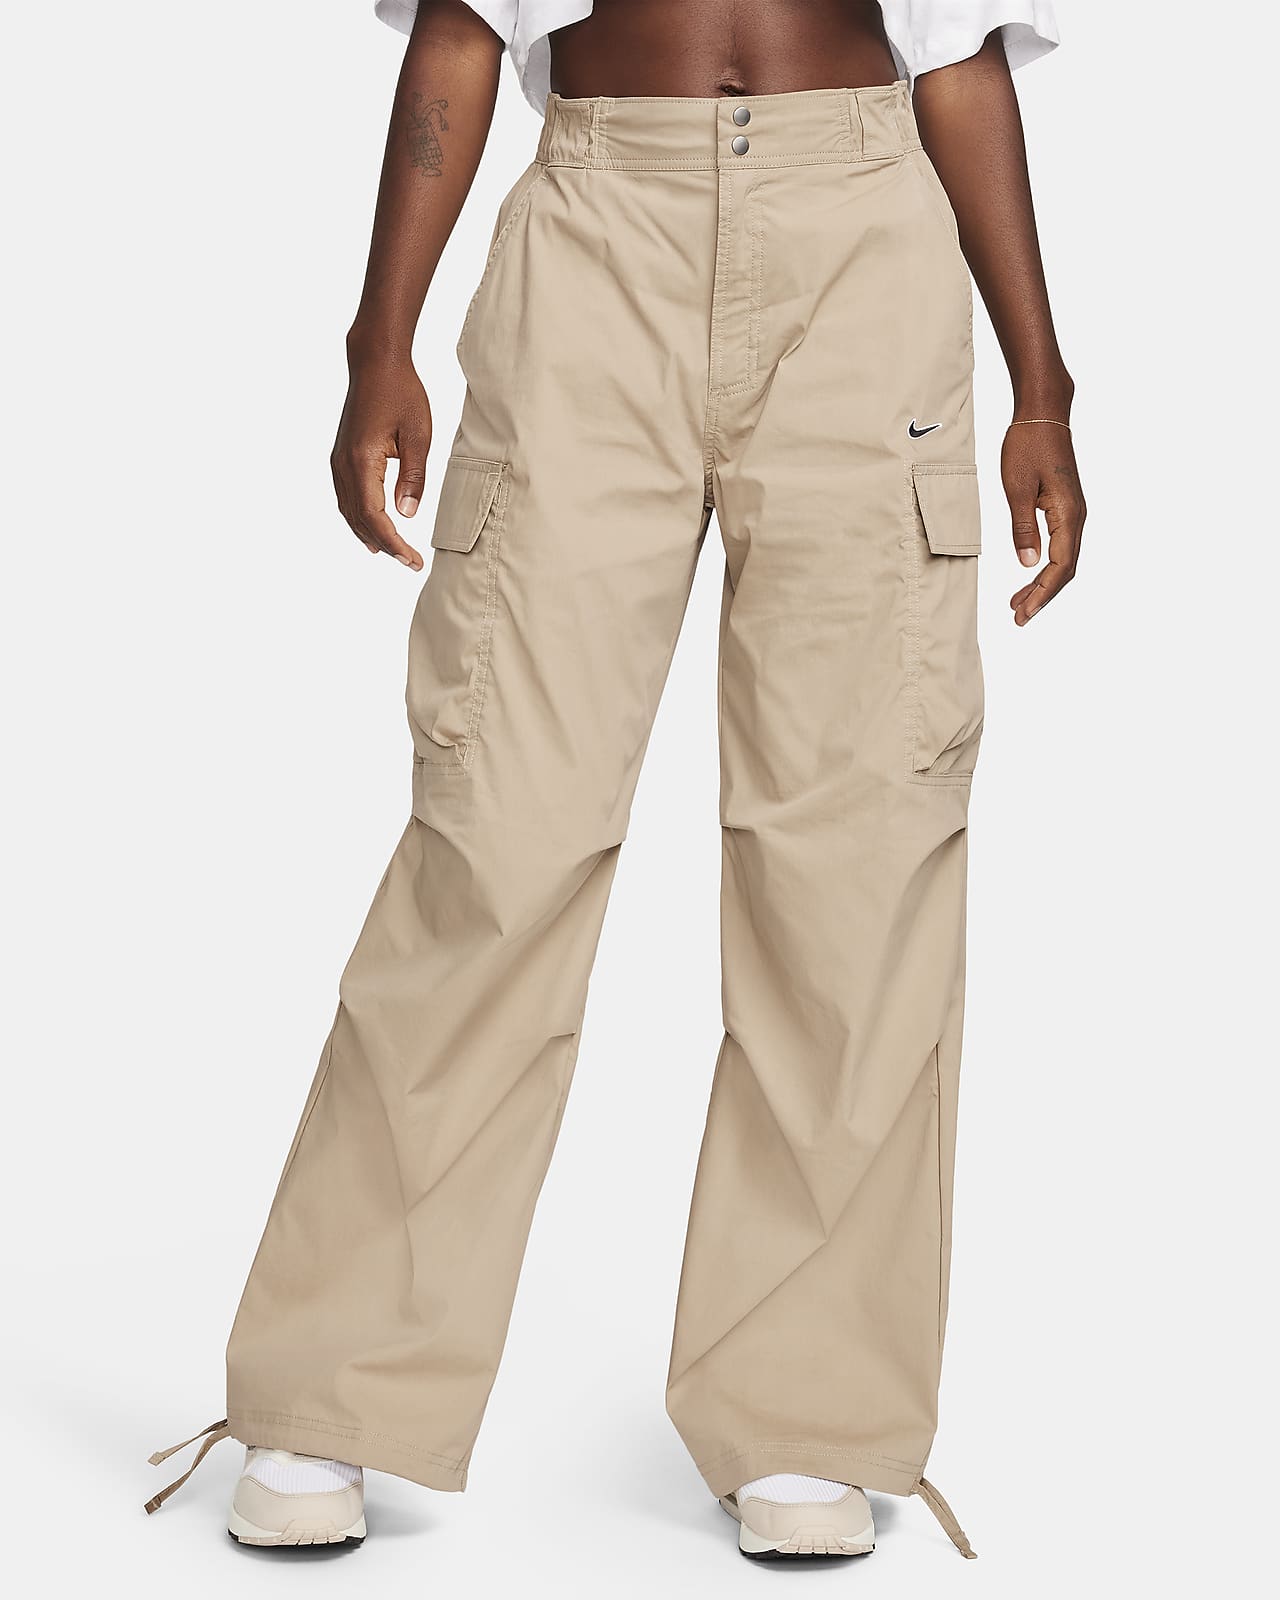 Γυναικείο ψηλόμεσο υφαντό παντελόνι cargo σε ριχτή γραμμή Nike Sportswear